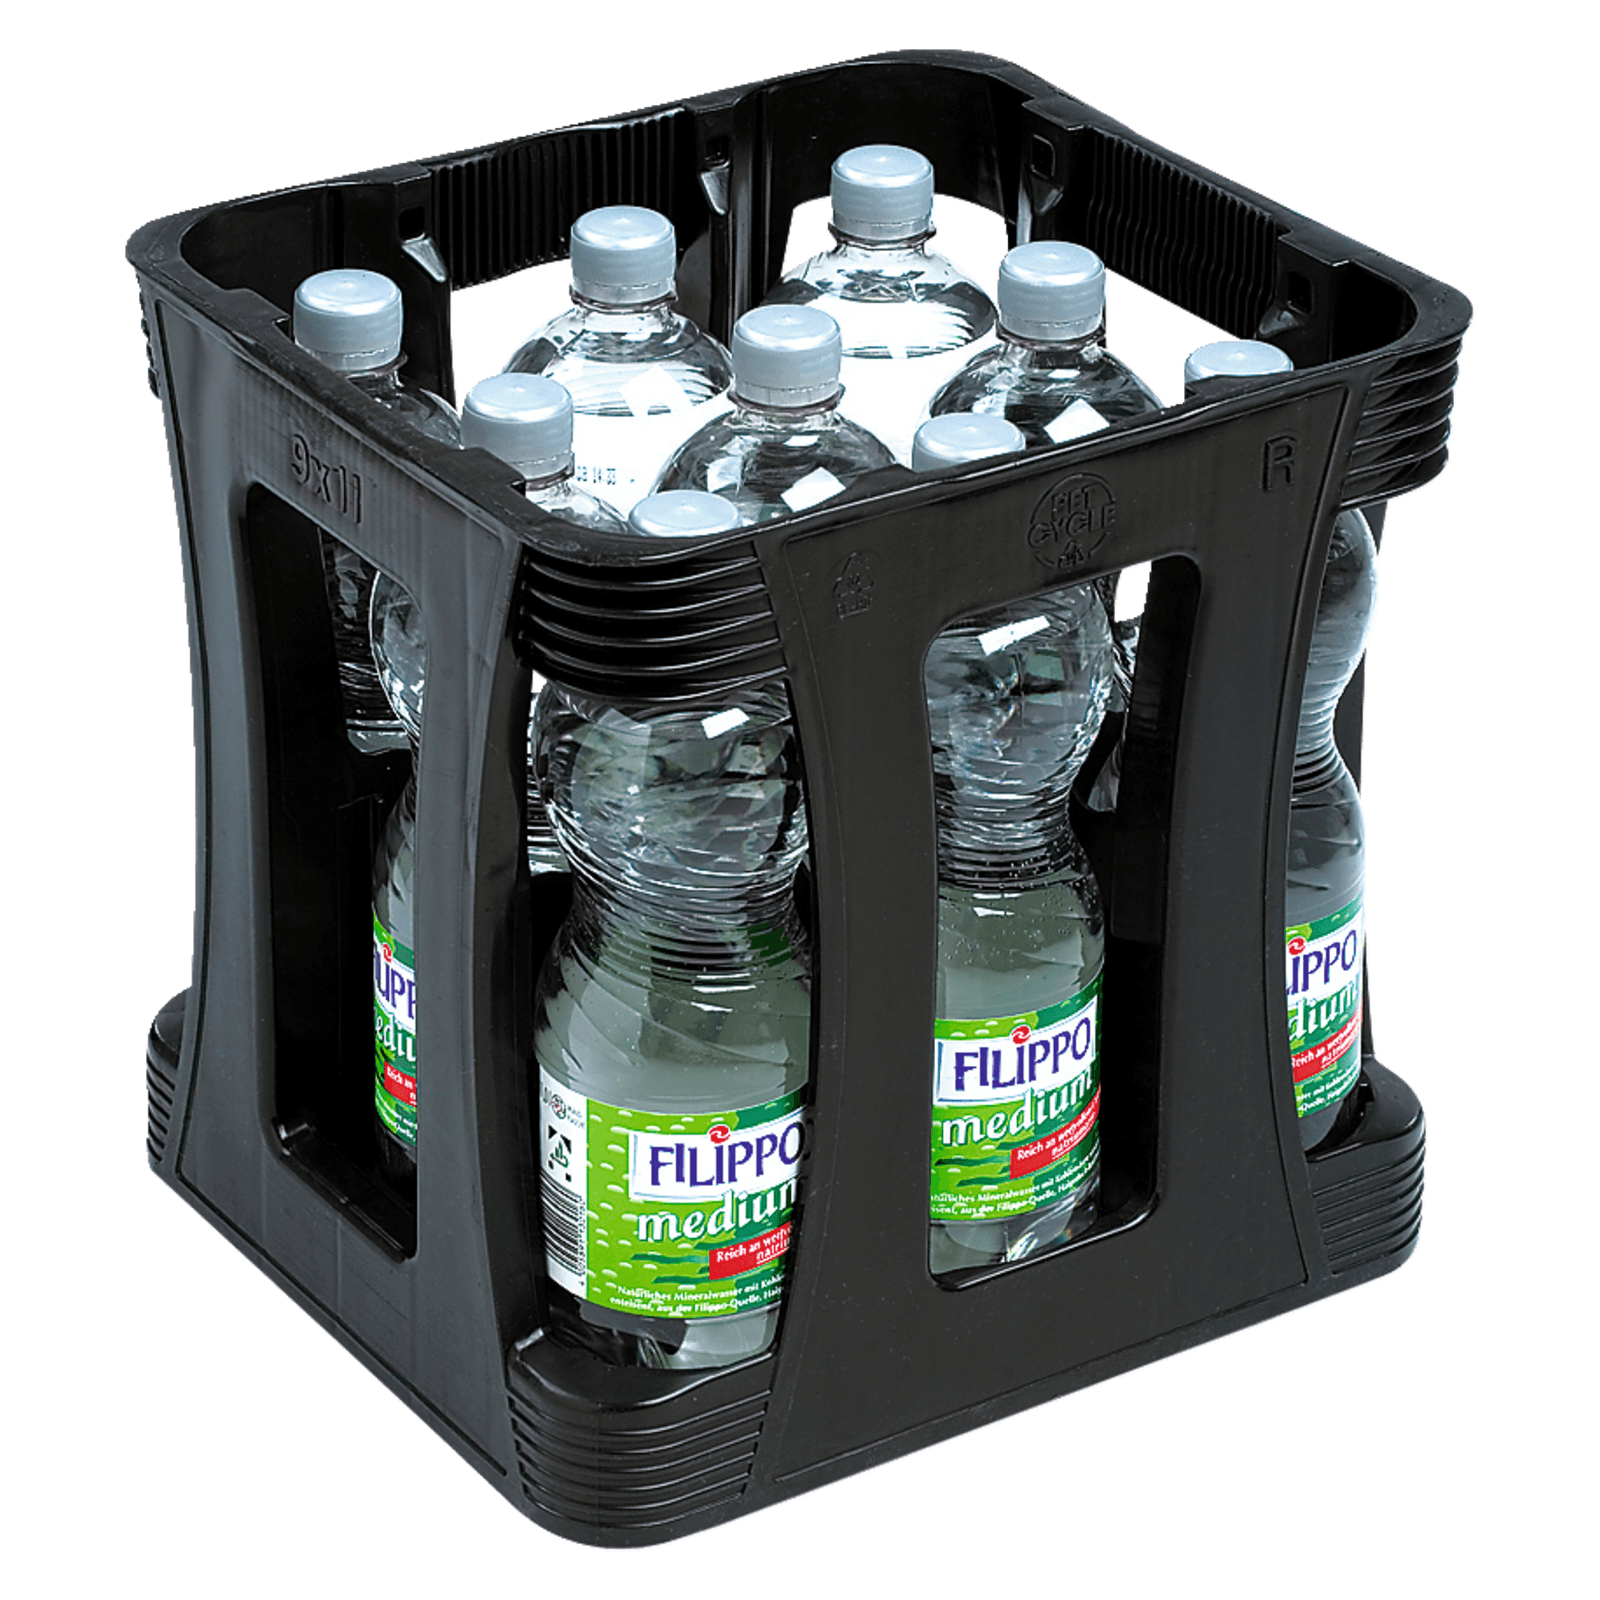 Filippo Mineralwasser Medium 9x1l  für 4.79 EUR